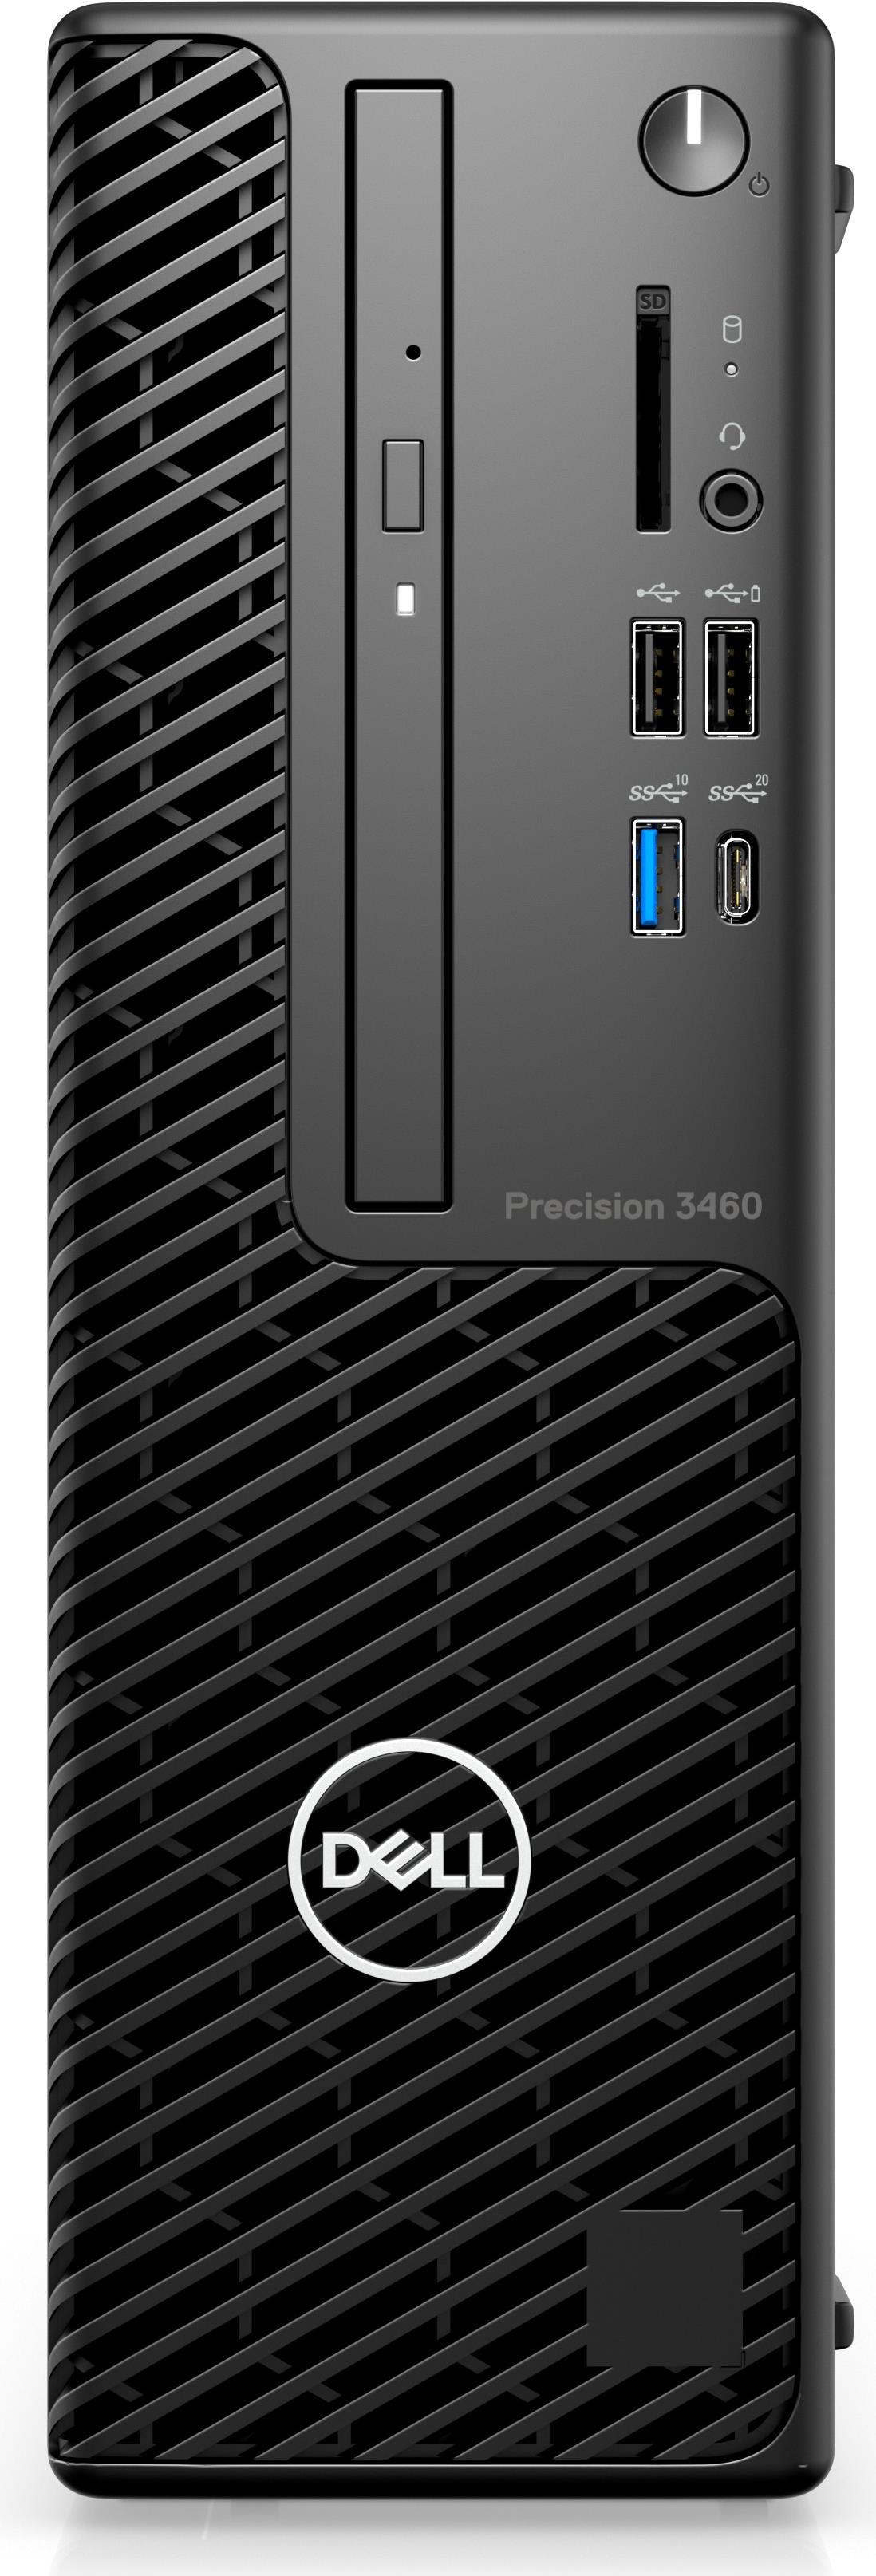 Dell Precision 3460 Small Form Factor (7RV3Y)